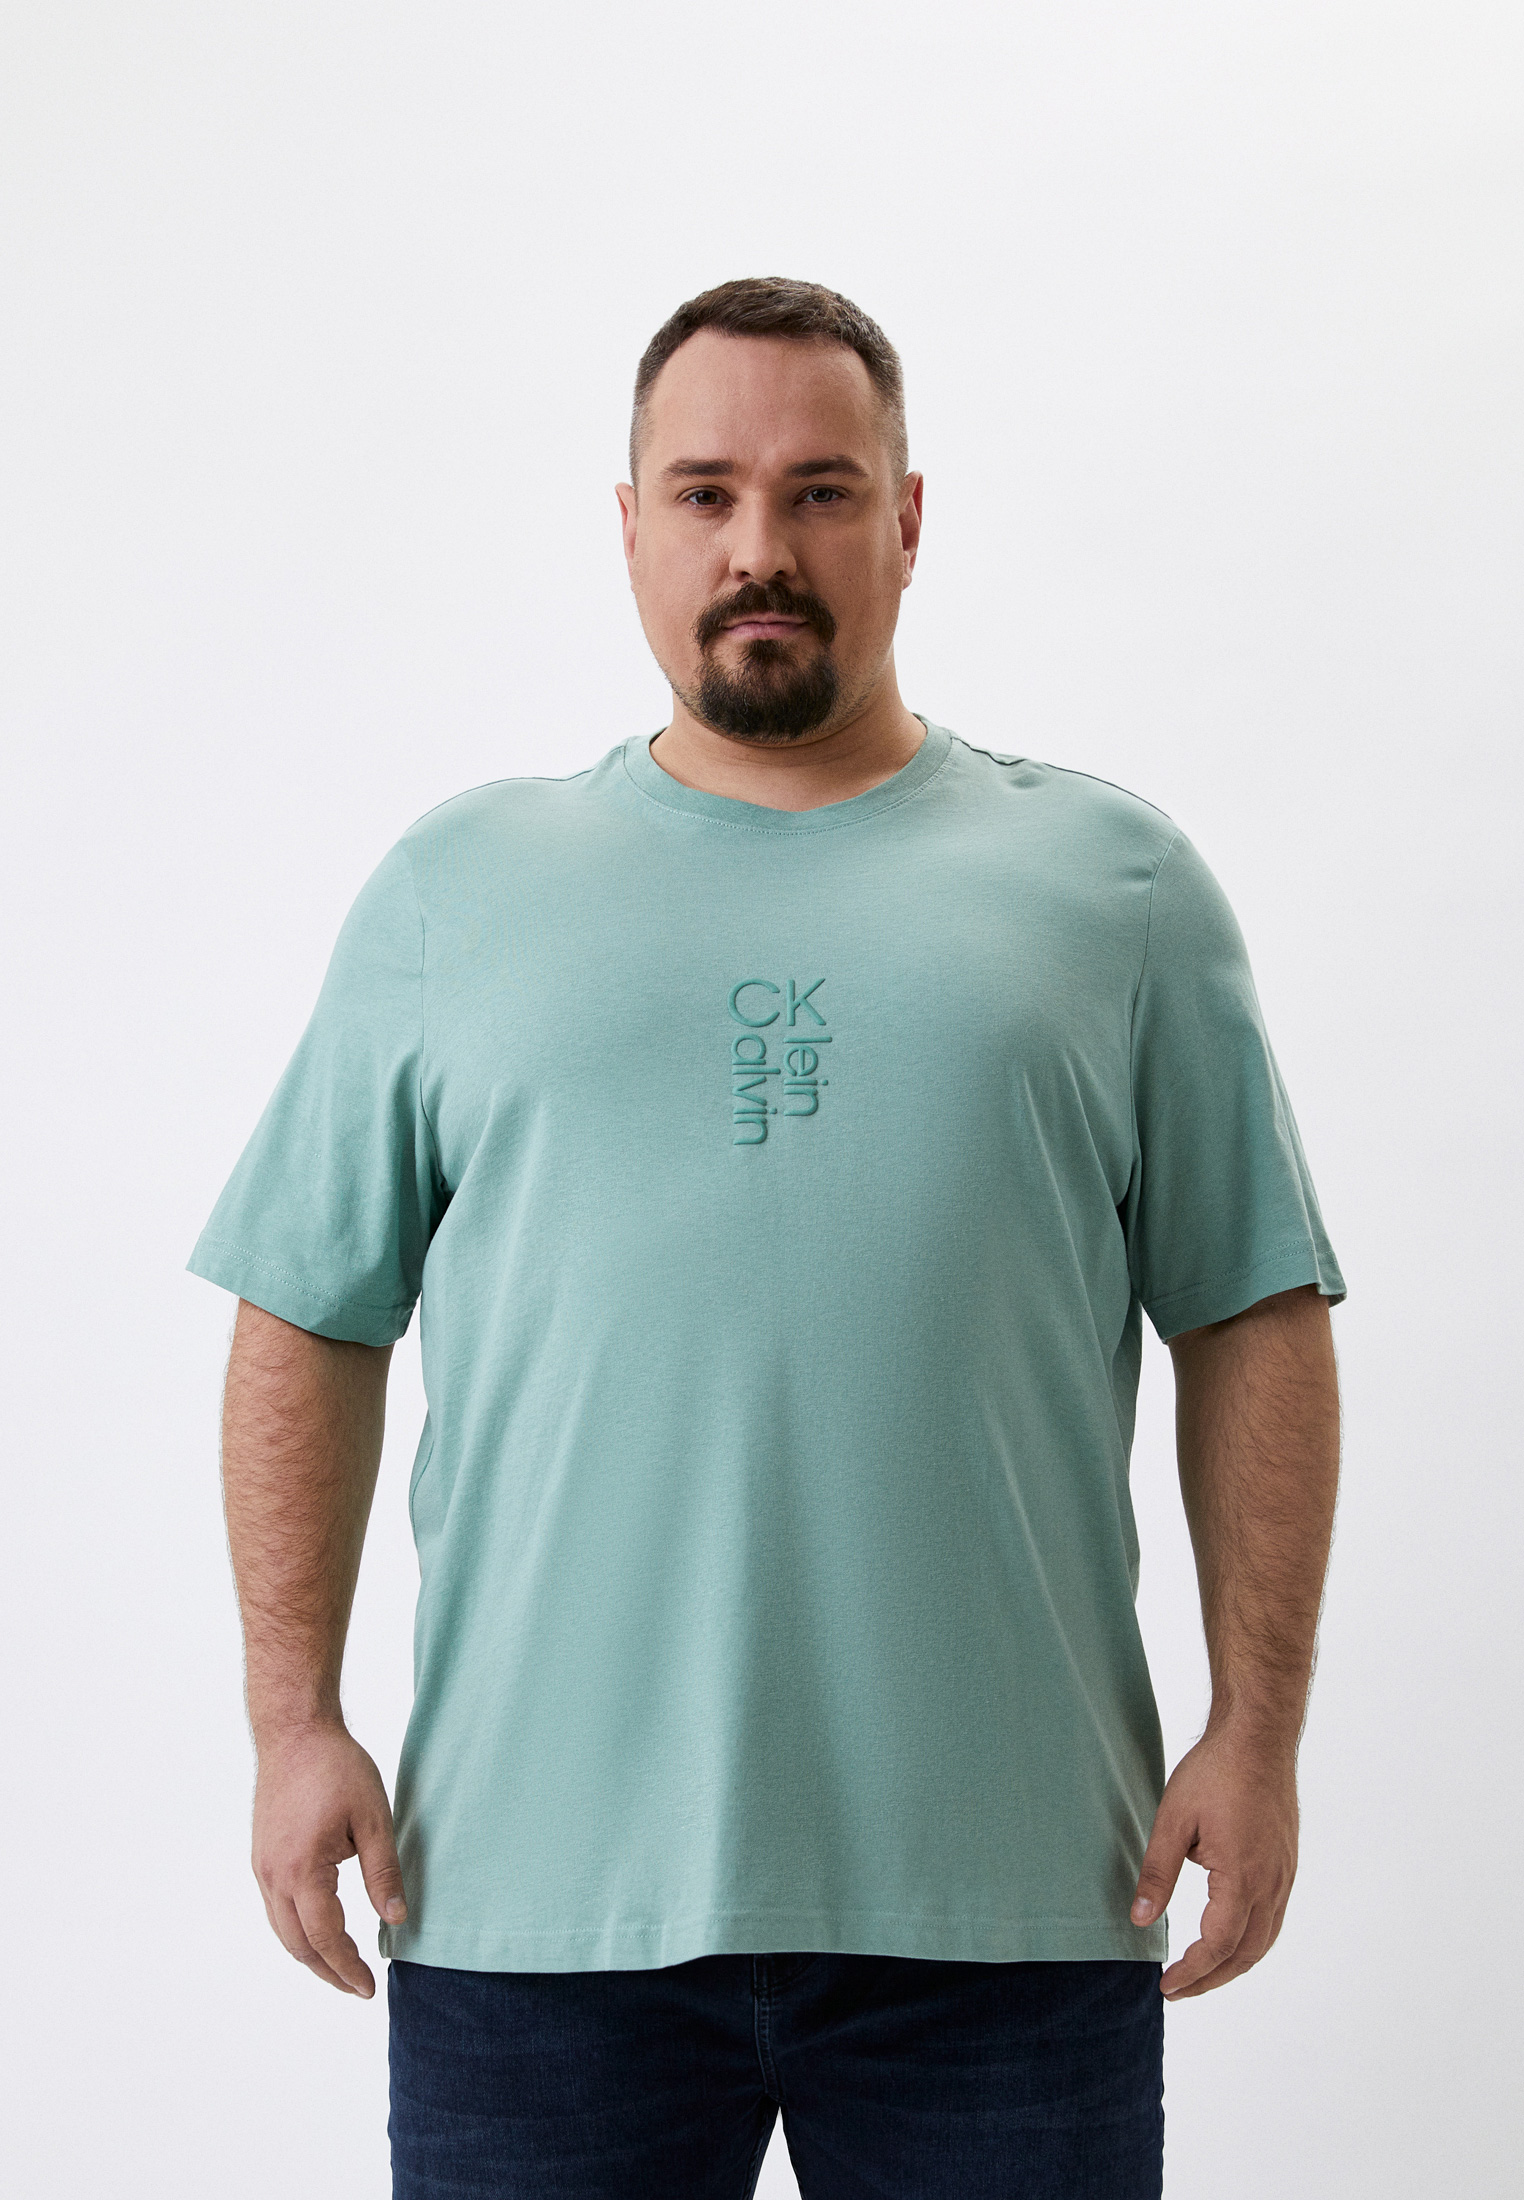 Мужская футболка Calvin Klein (Кельвин Кляйн) K10K109035: изображение 1